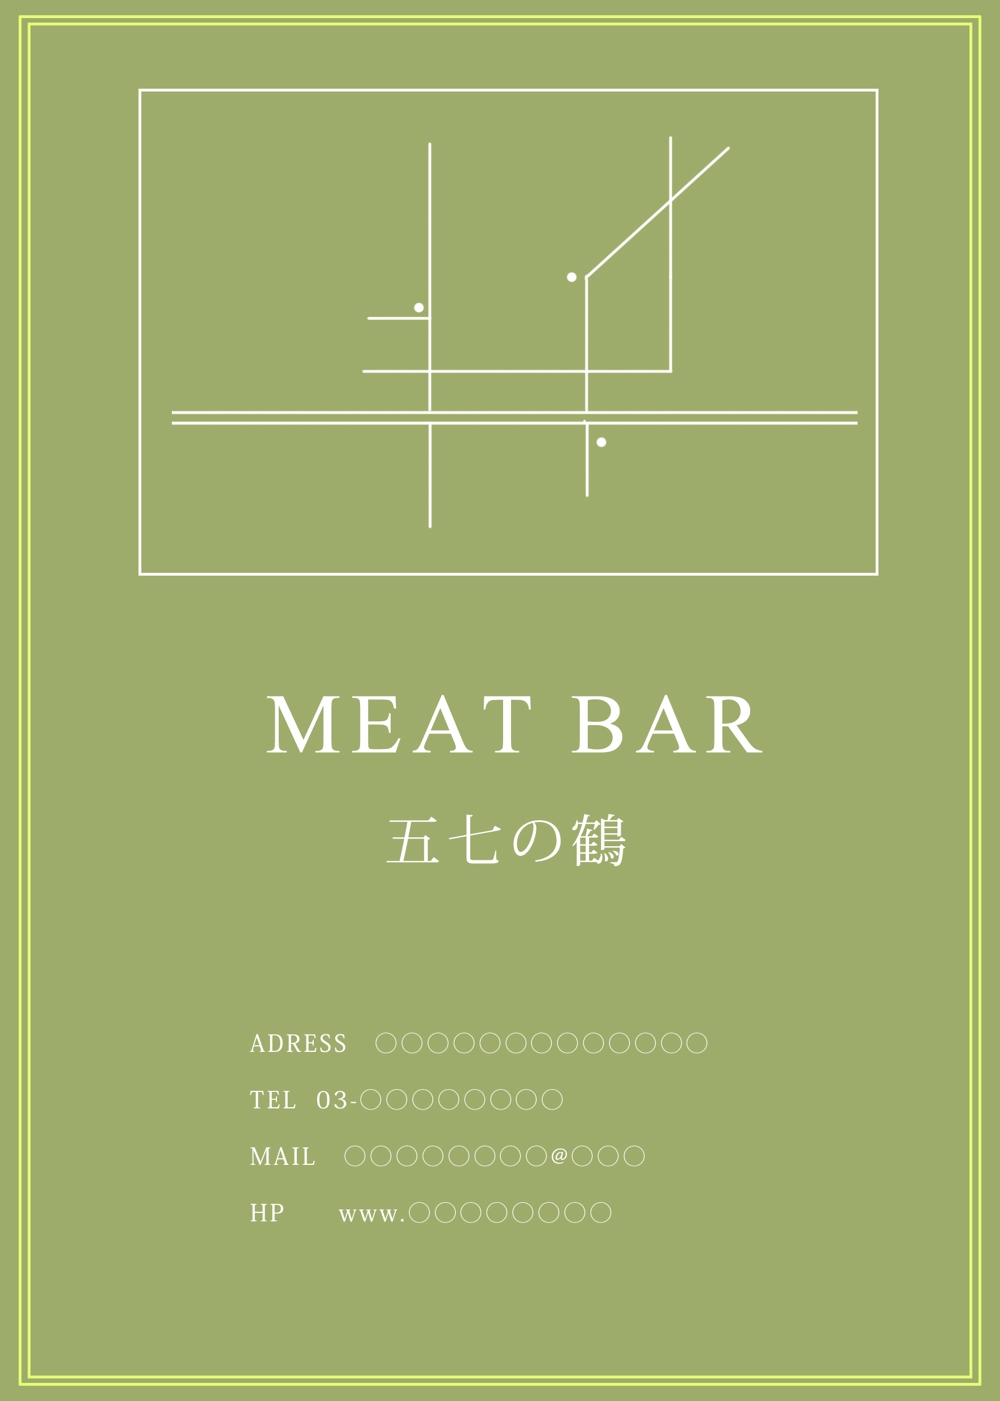 肉バルのメニューとショップカードの作成